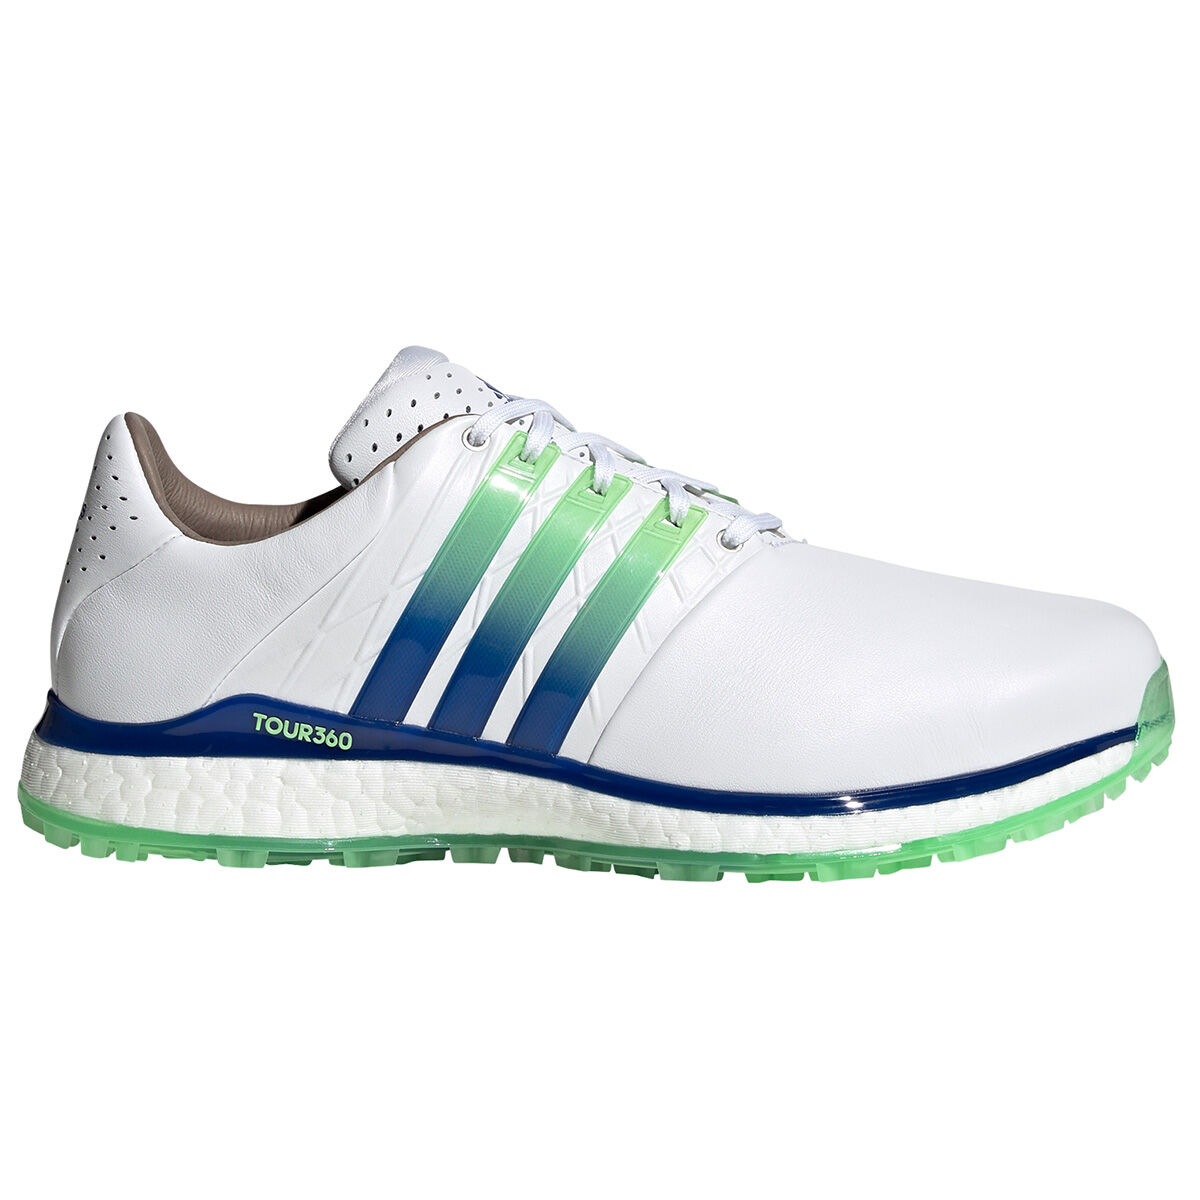 adidas golf clothing sale uk